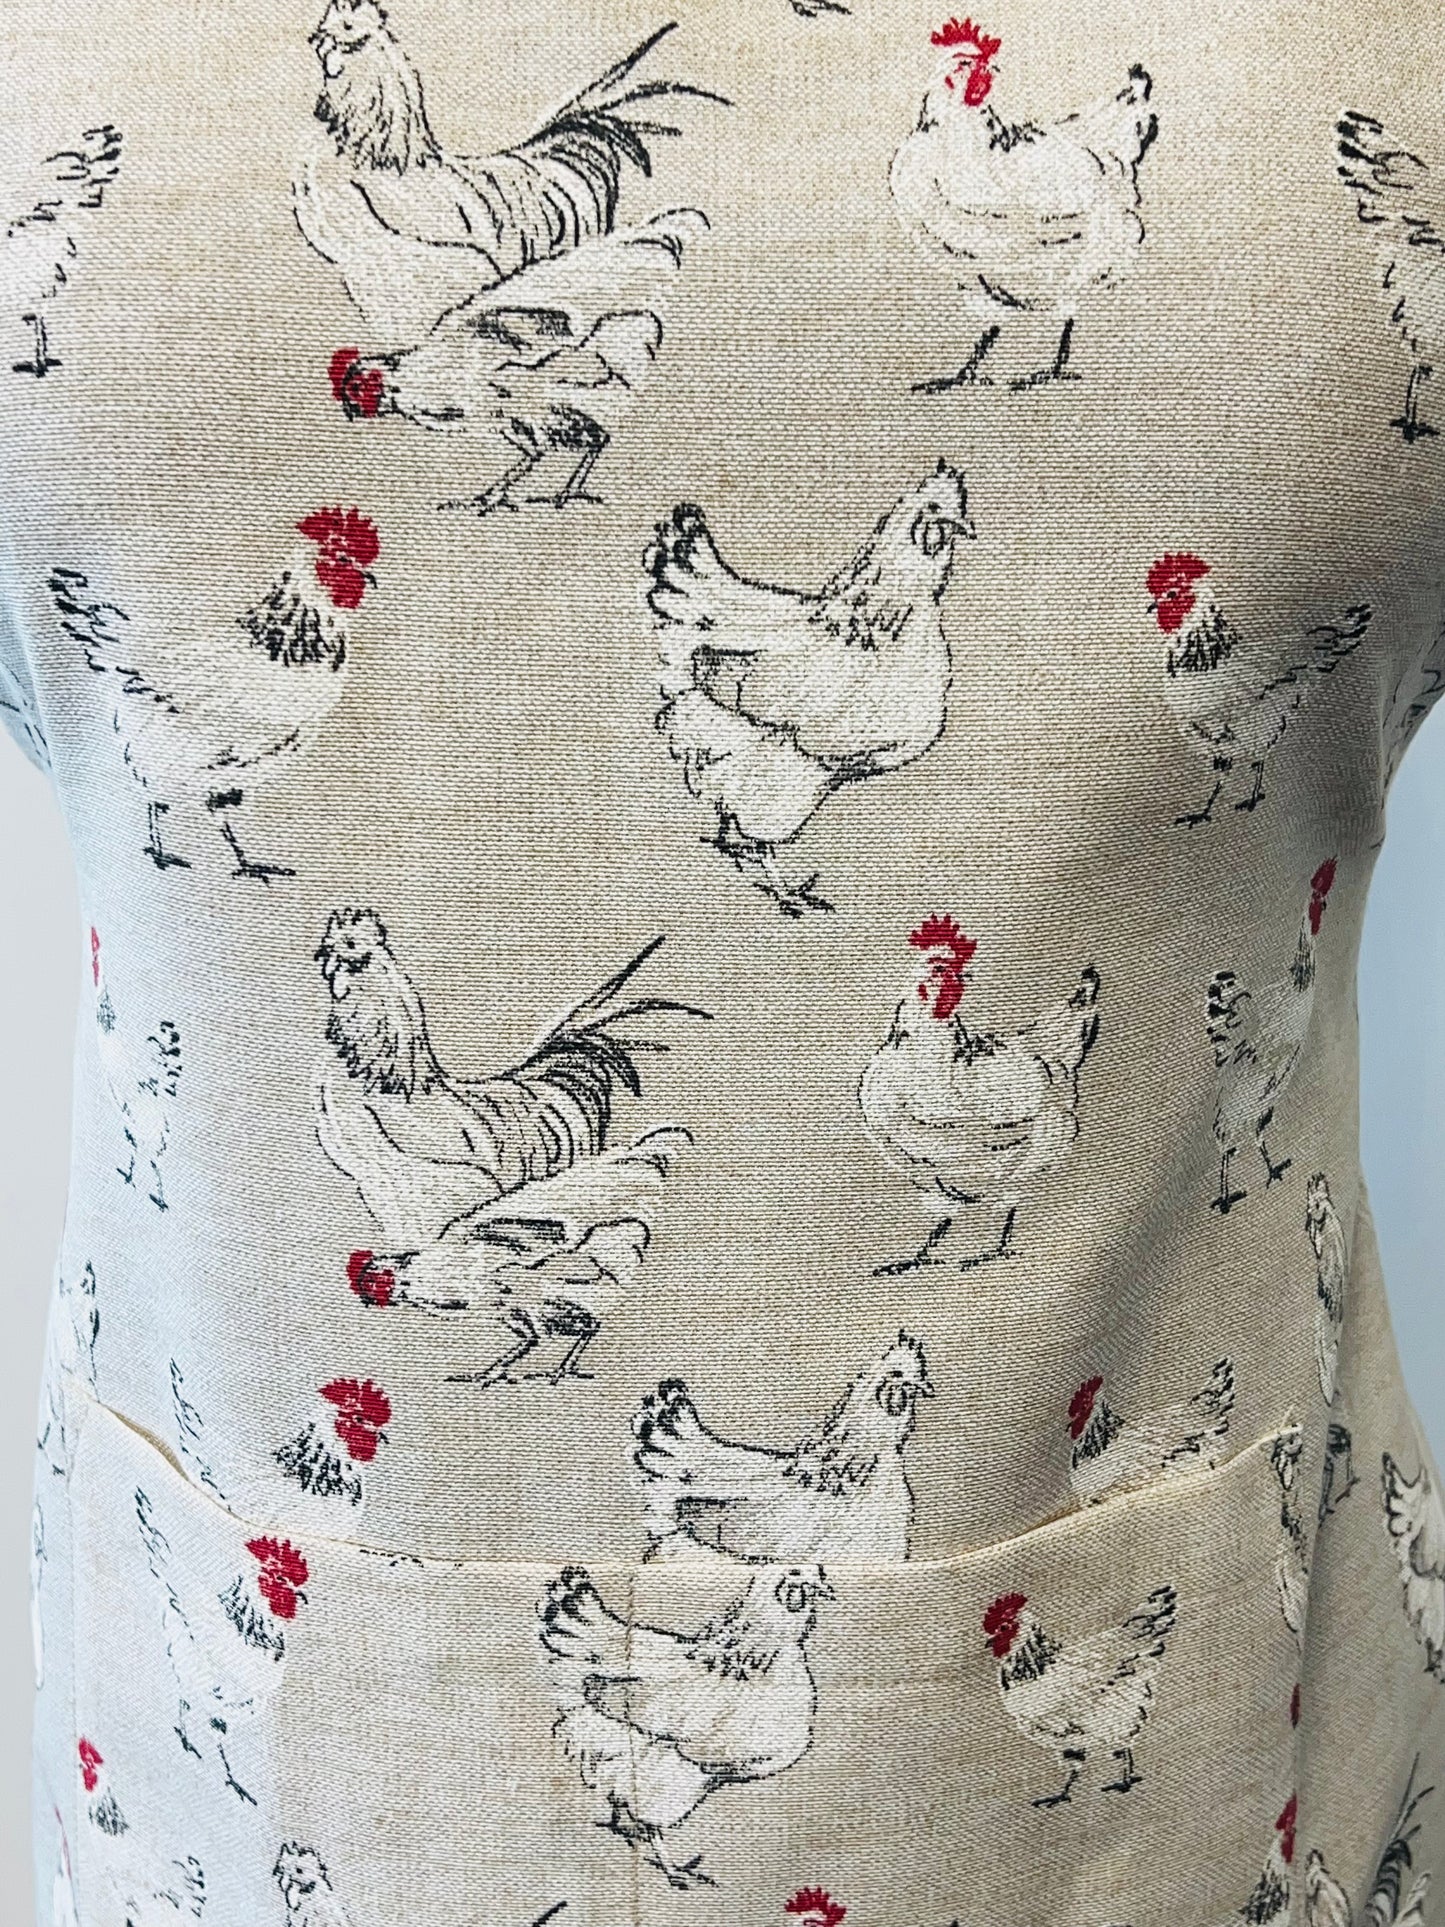 Chicken apron